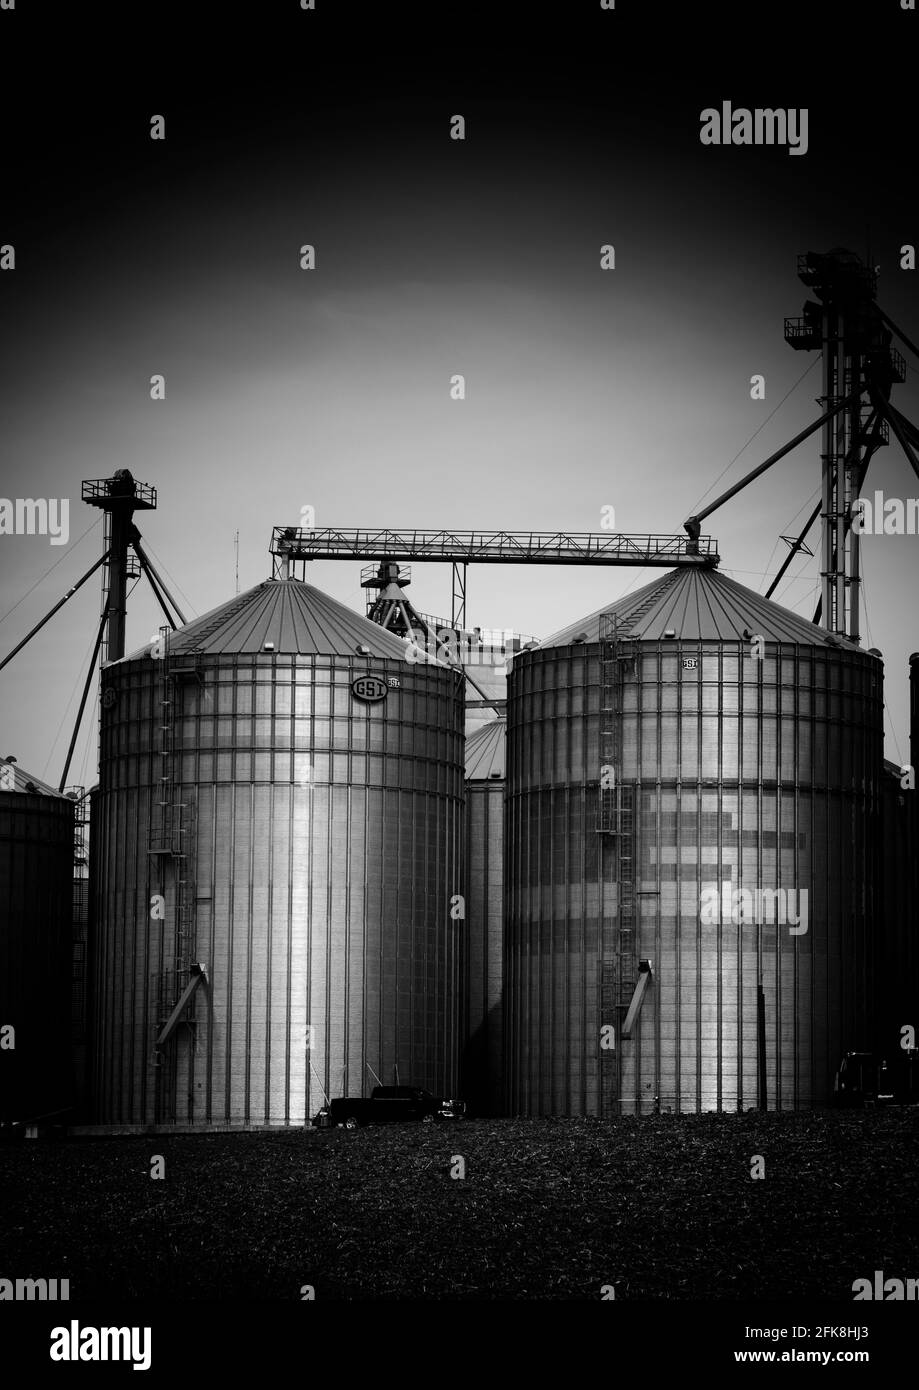 Image en noir et blanc de Silos dans une usine d'alimentation agricole. Kitchener Ontario Canada. Banque D'Images